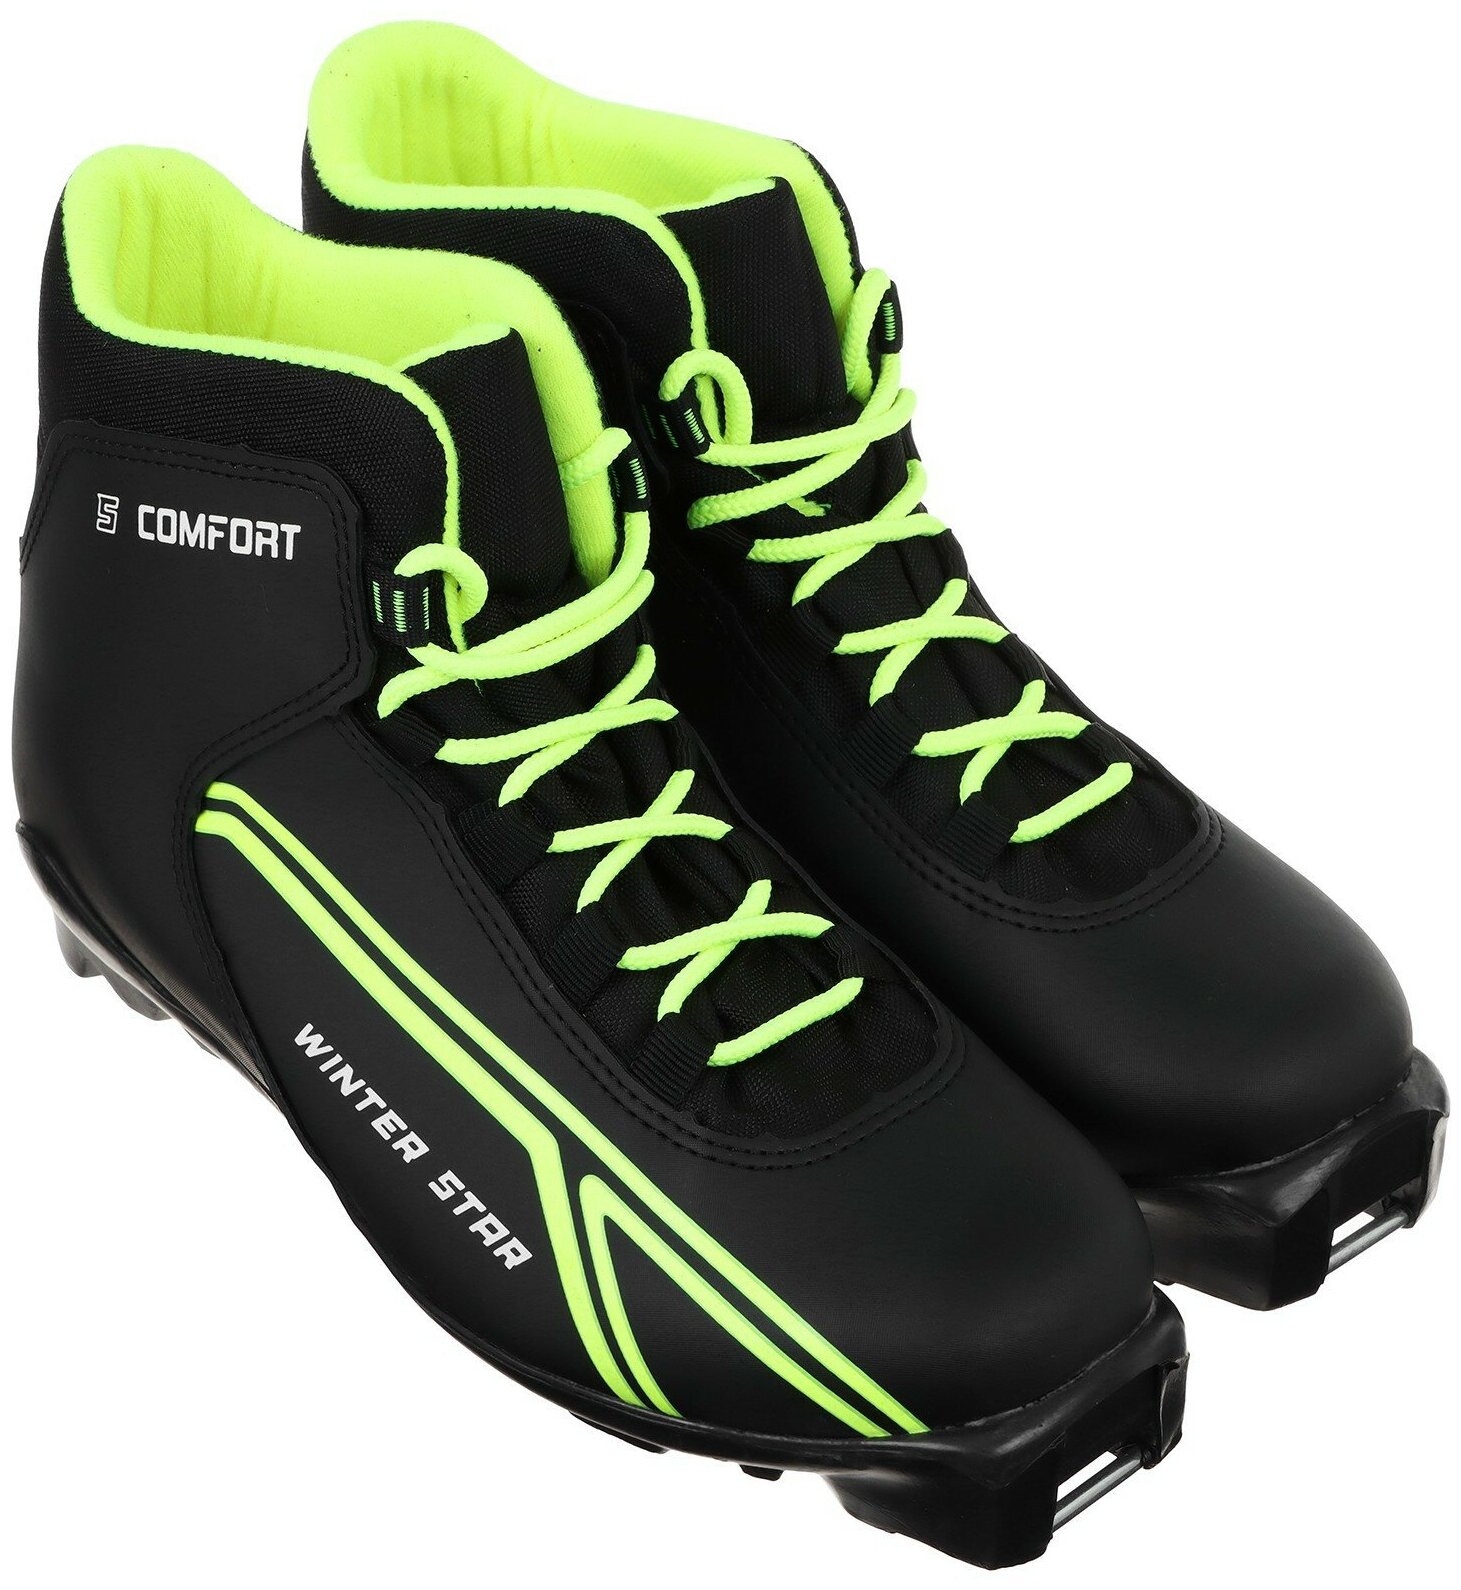 Ботинки лыжные Winter Star "Сomfort", SNS, искусственная кожа, размер 44, цвет чёрный, лайм-неон